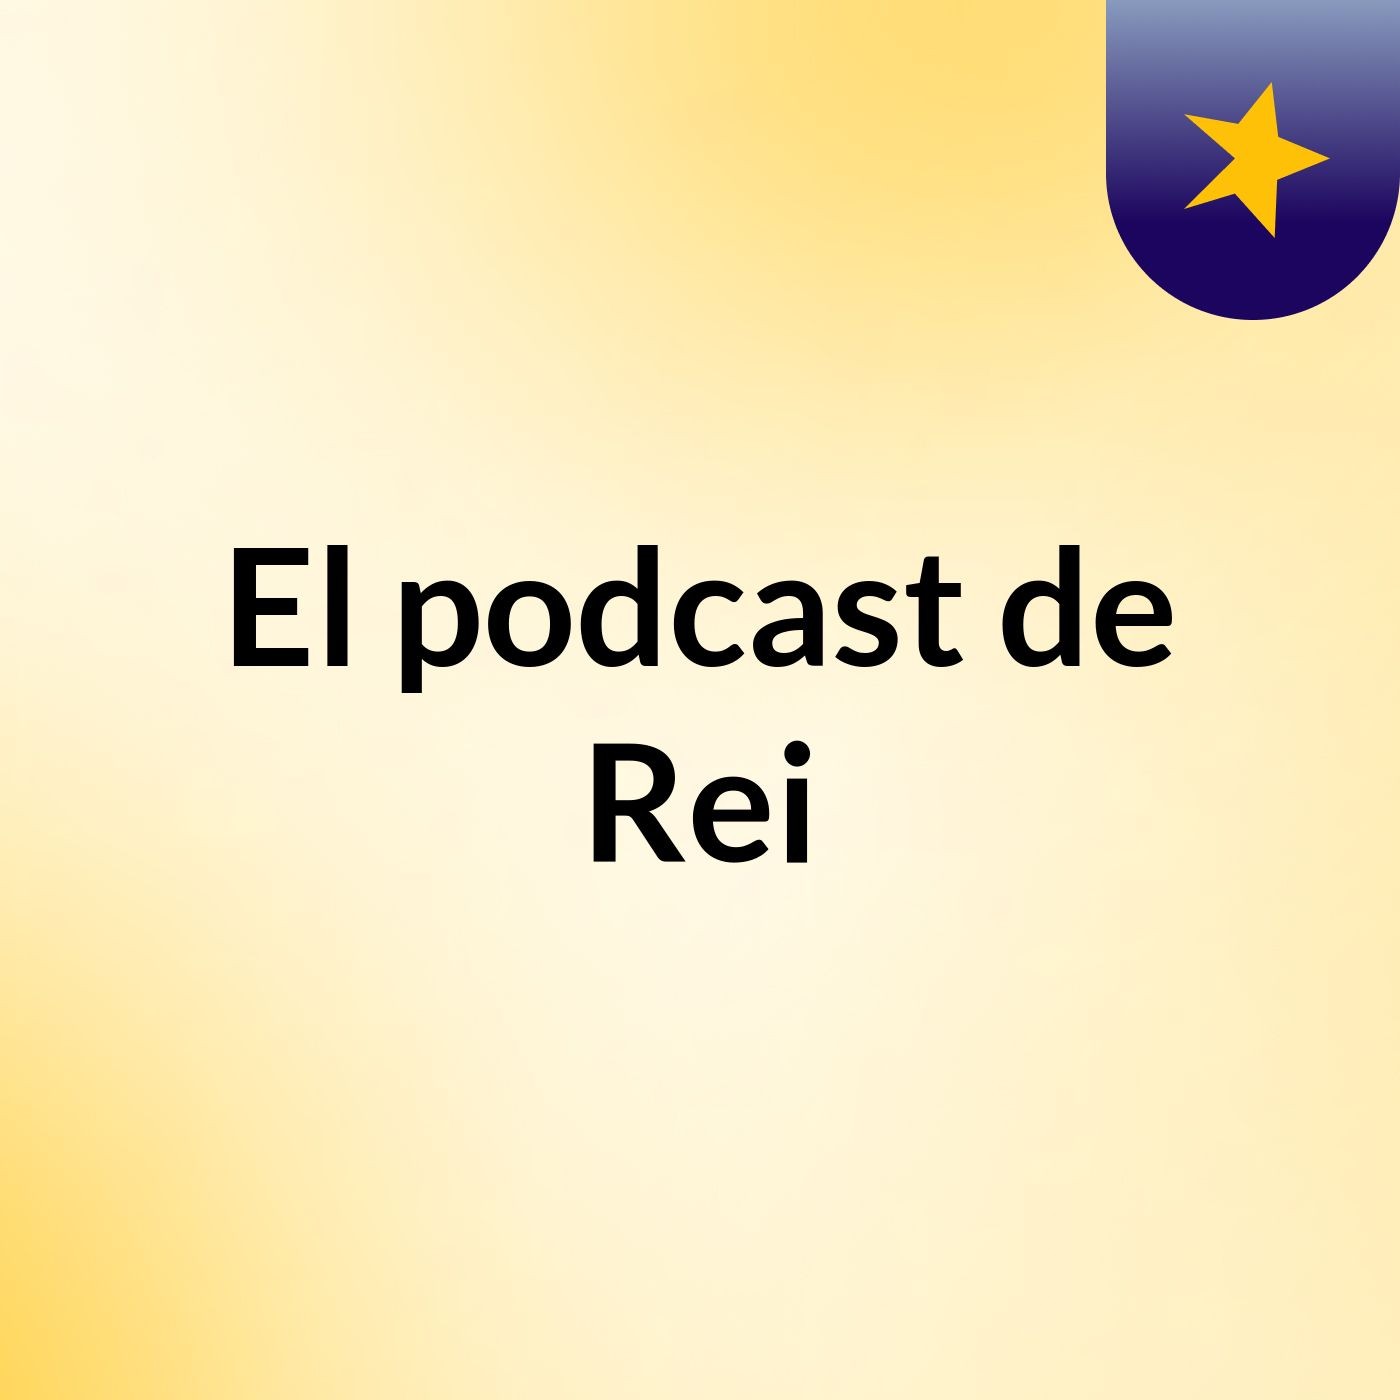 El podcast de Rei